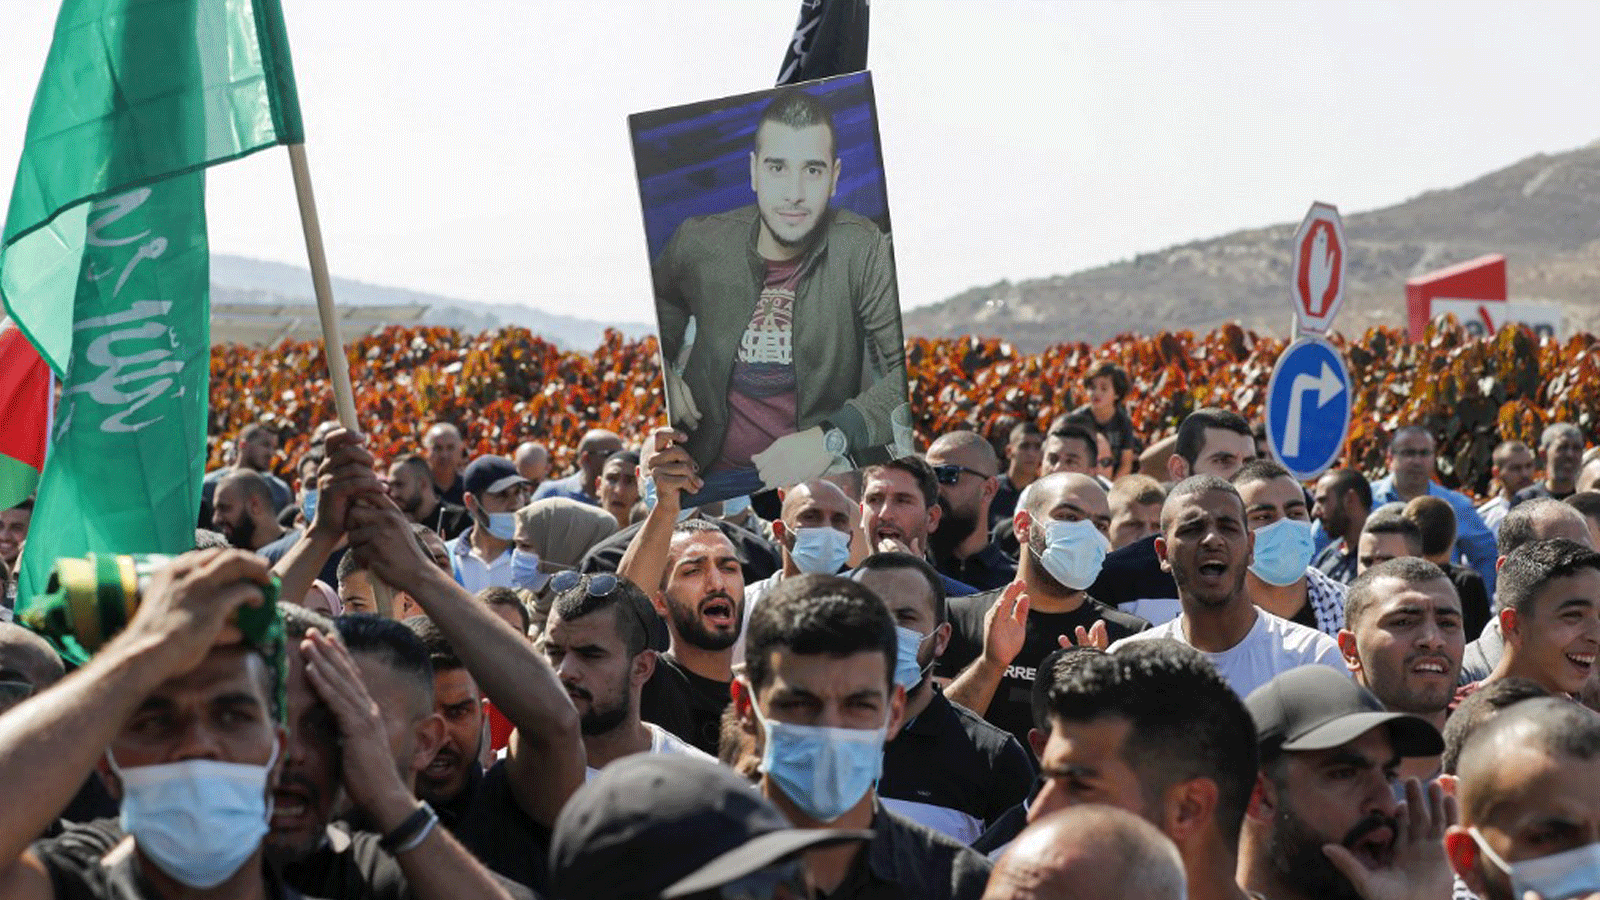 عرب يتظاهرون في أم الفحم/ شمال إسرائيل للتنديد بالجريمة والعنف في المجتمع، في 22 تشرين الأول/أكتوبر 2021